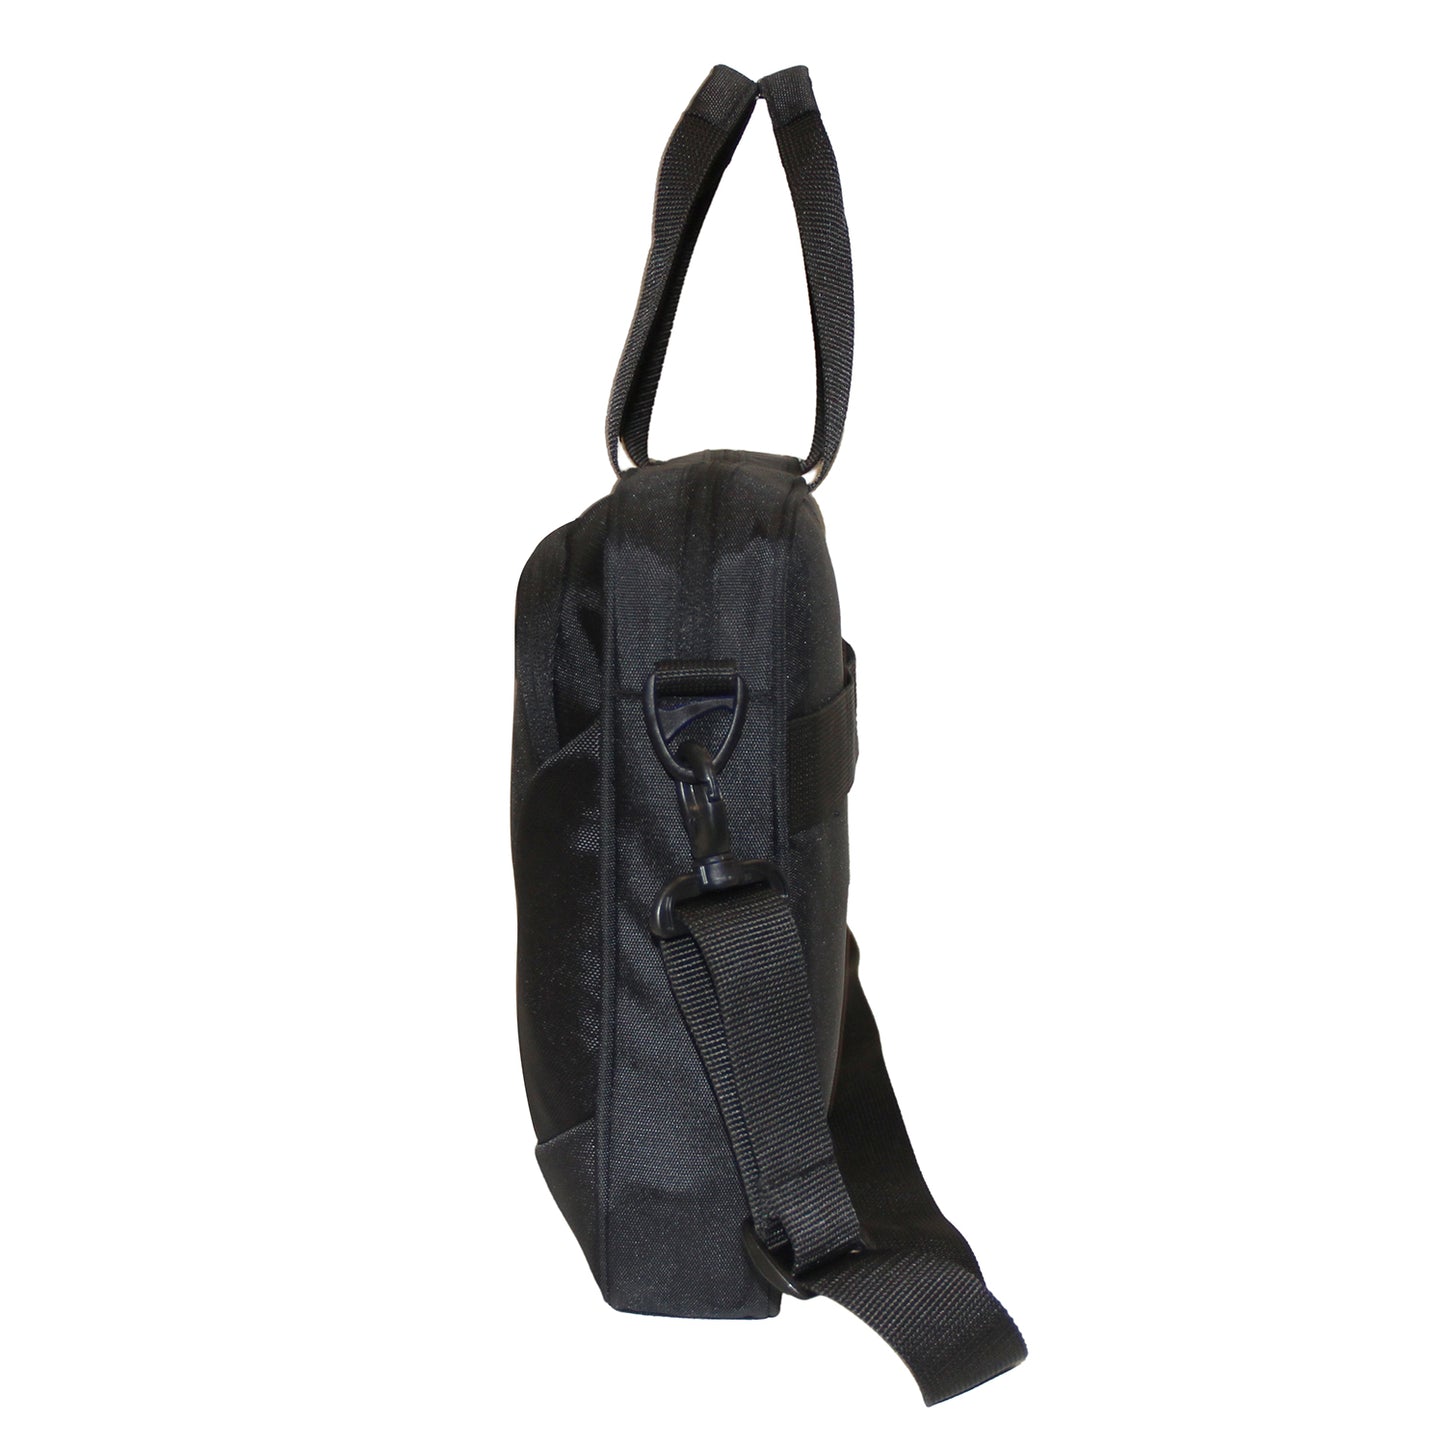 Jet Black Professional Shoulder Bag